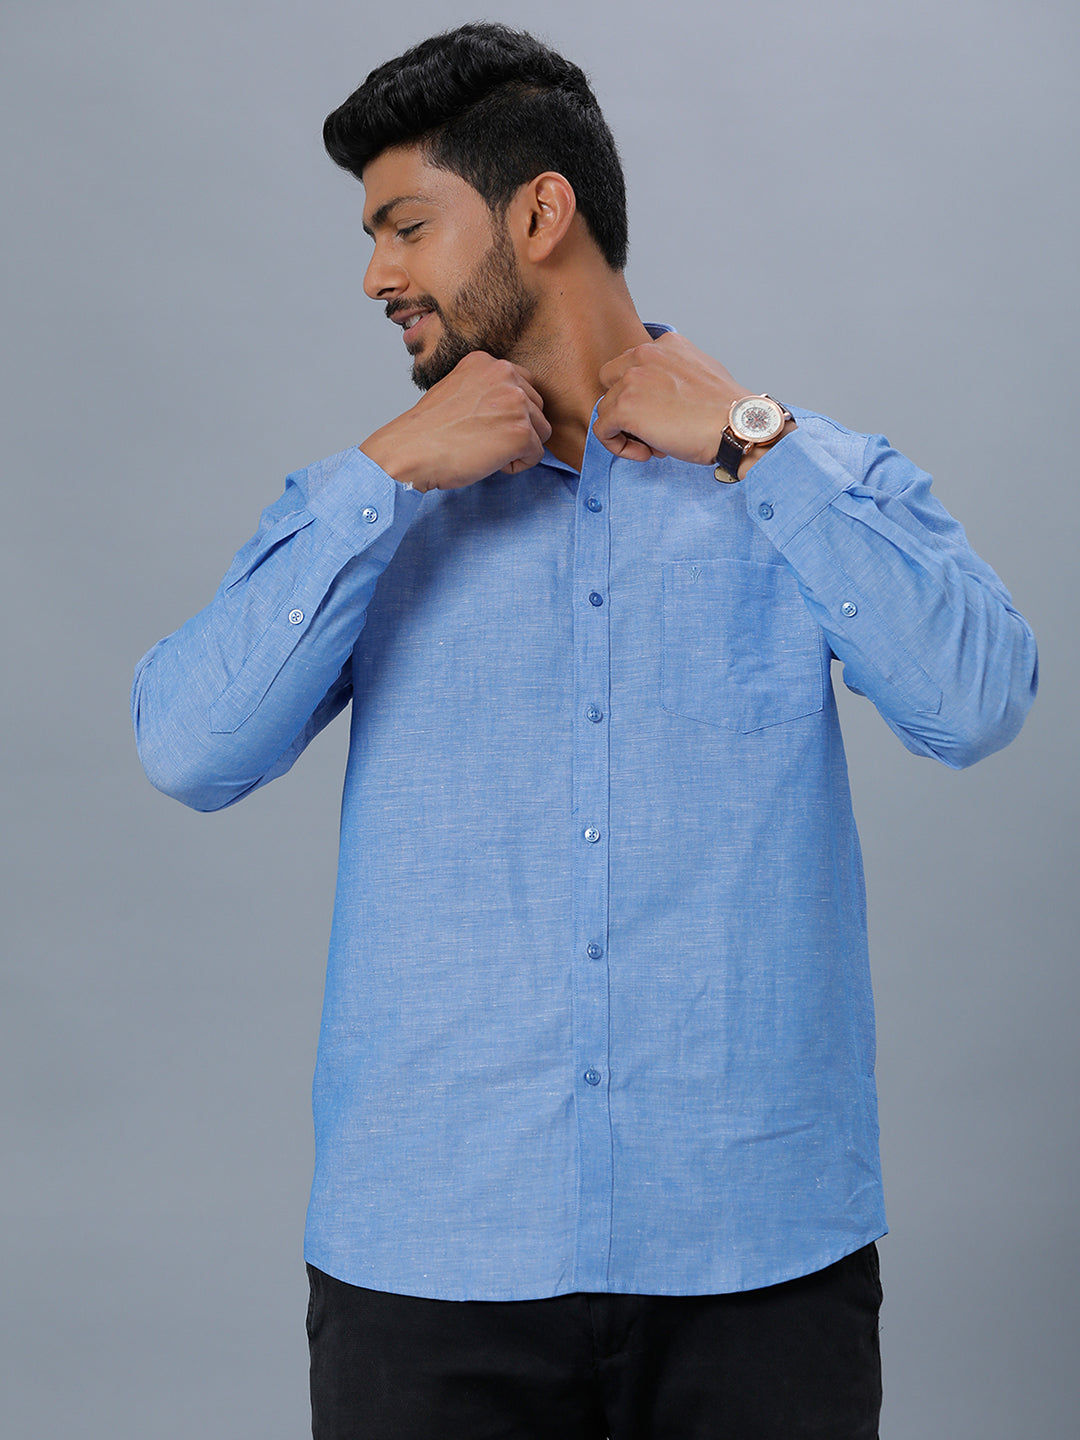 Linen Cotton Plain Colour Shirt Fabric Blue Unic Fashion